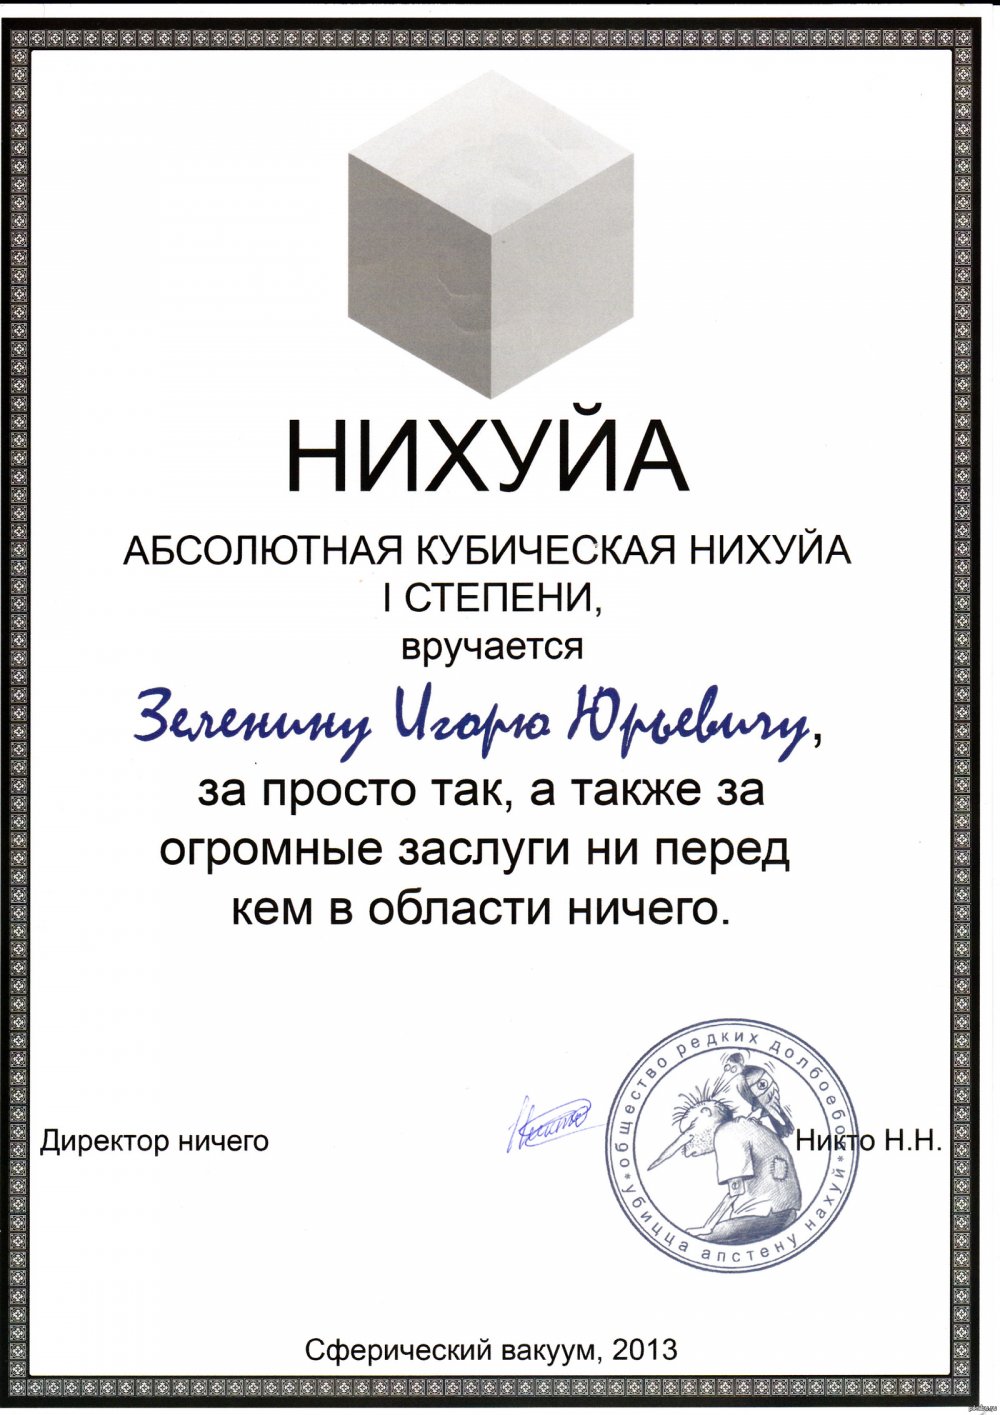 Сертификат на списание долгов